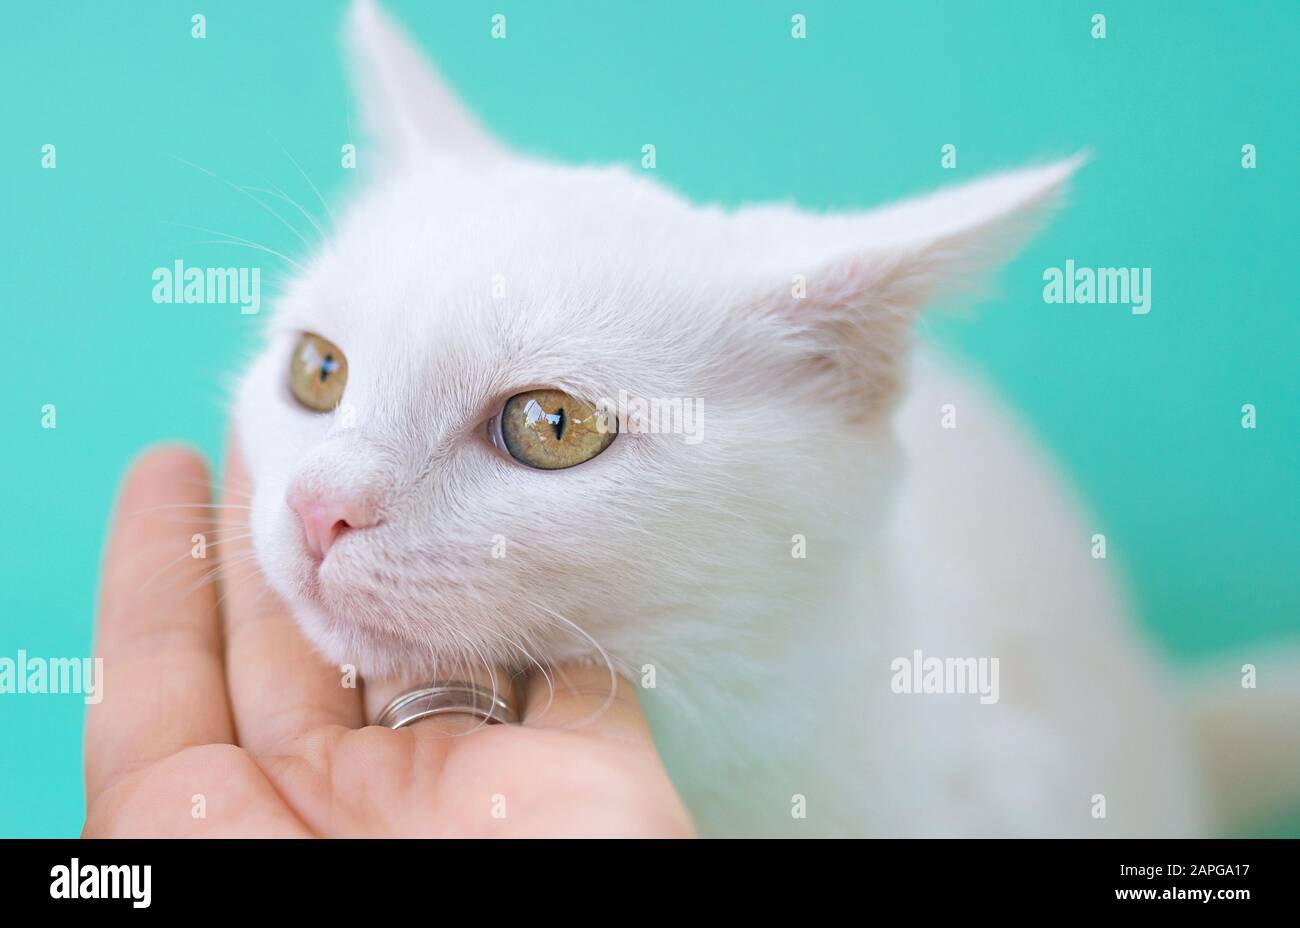 Main touchant mignon doux curieux chat blanc de chaton sur fond de couleur de menthol. Ami, animal de compagnie, allergie, tendresse, concept de solitude Banque D'Images